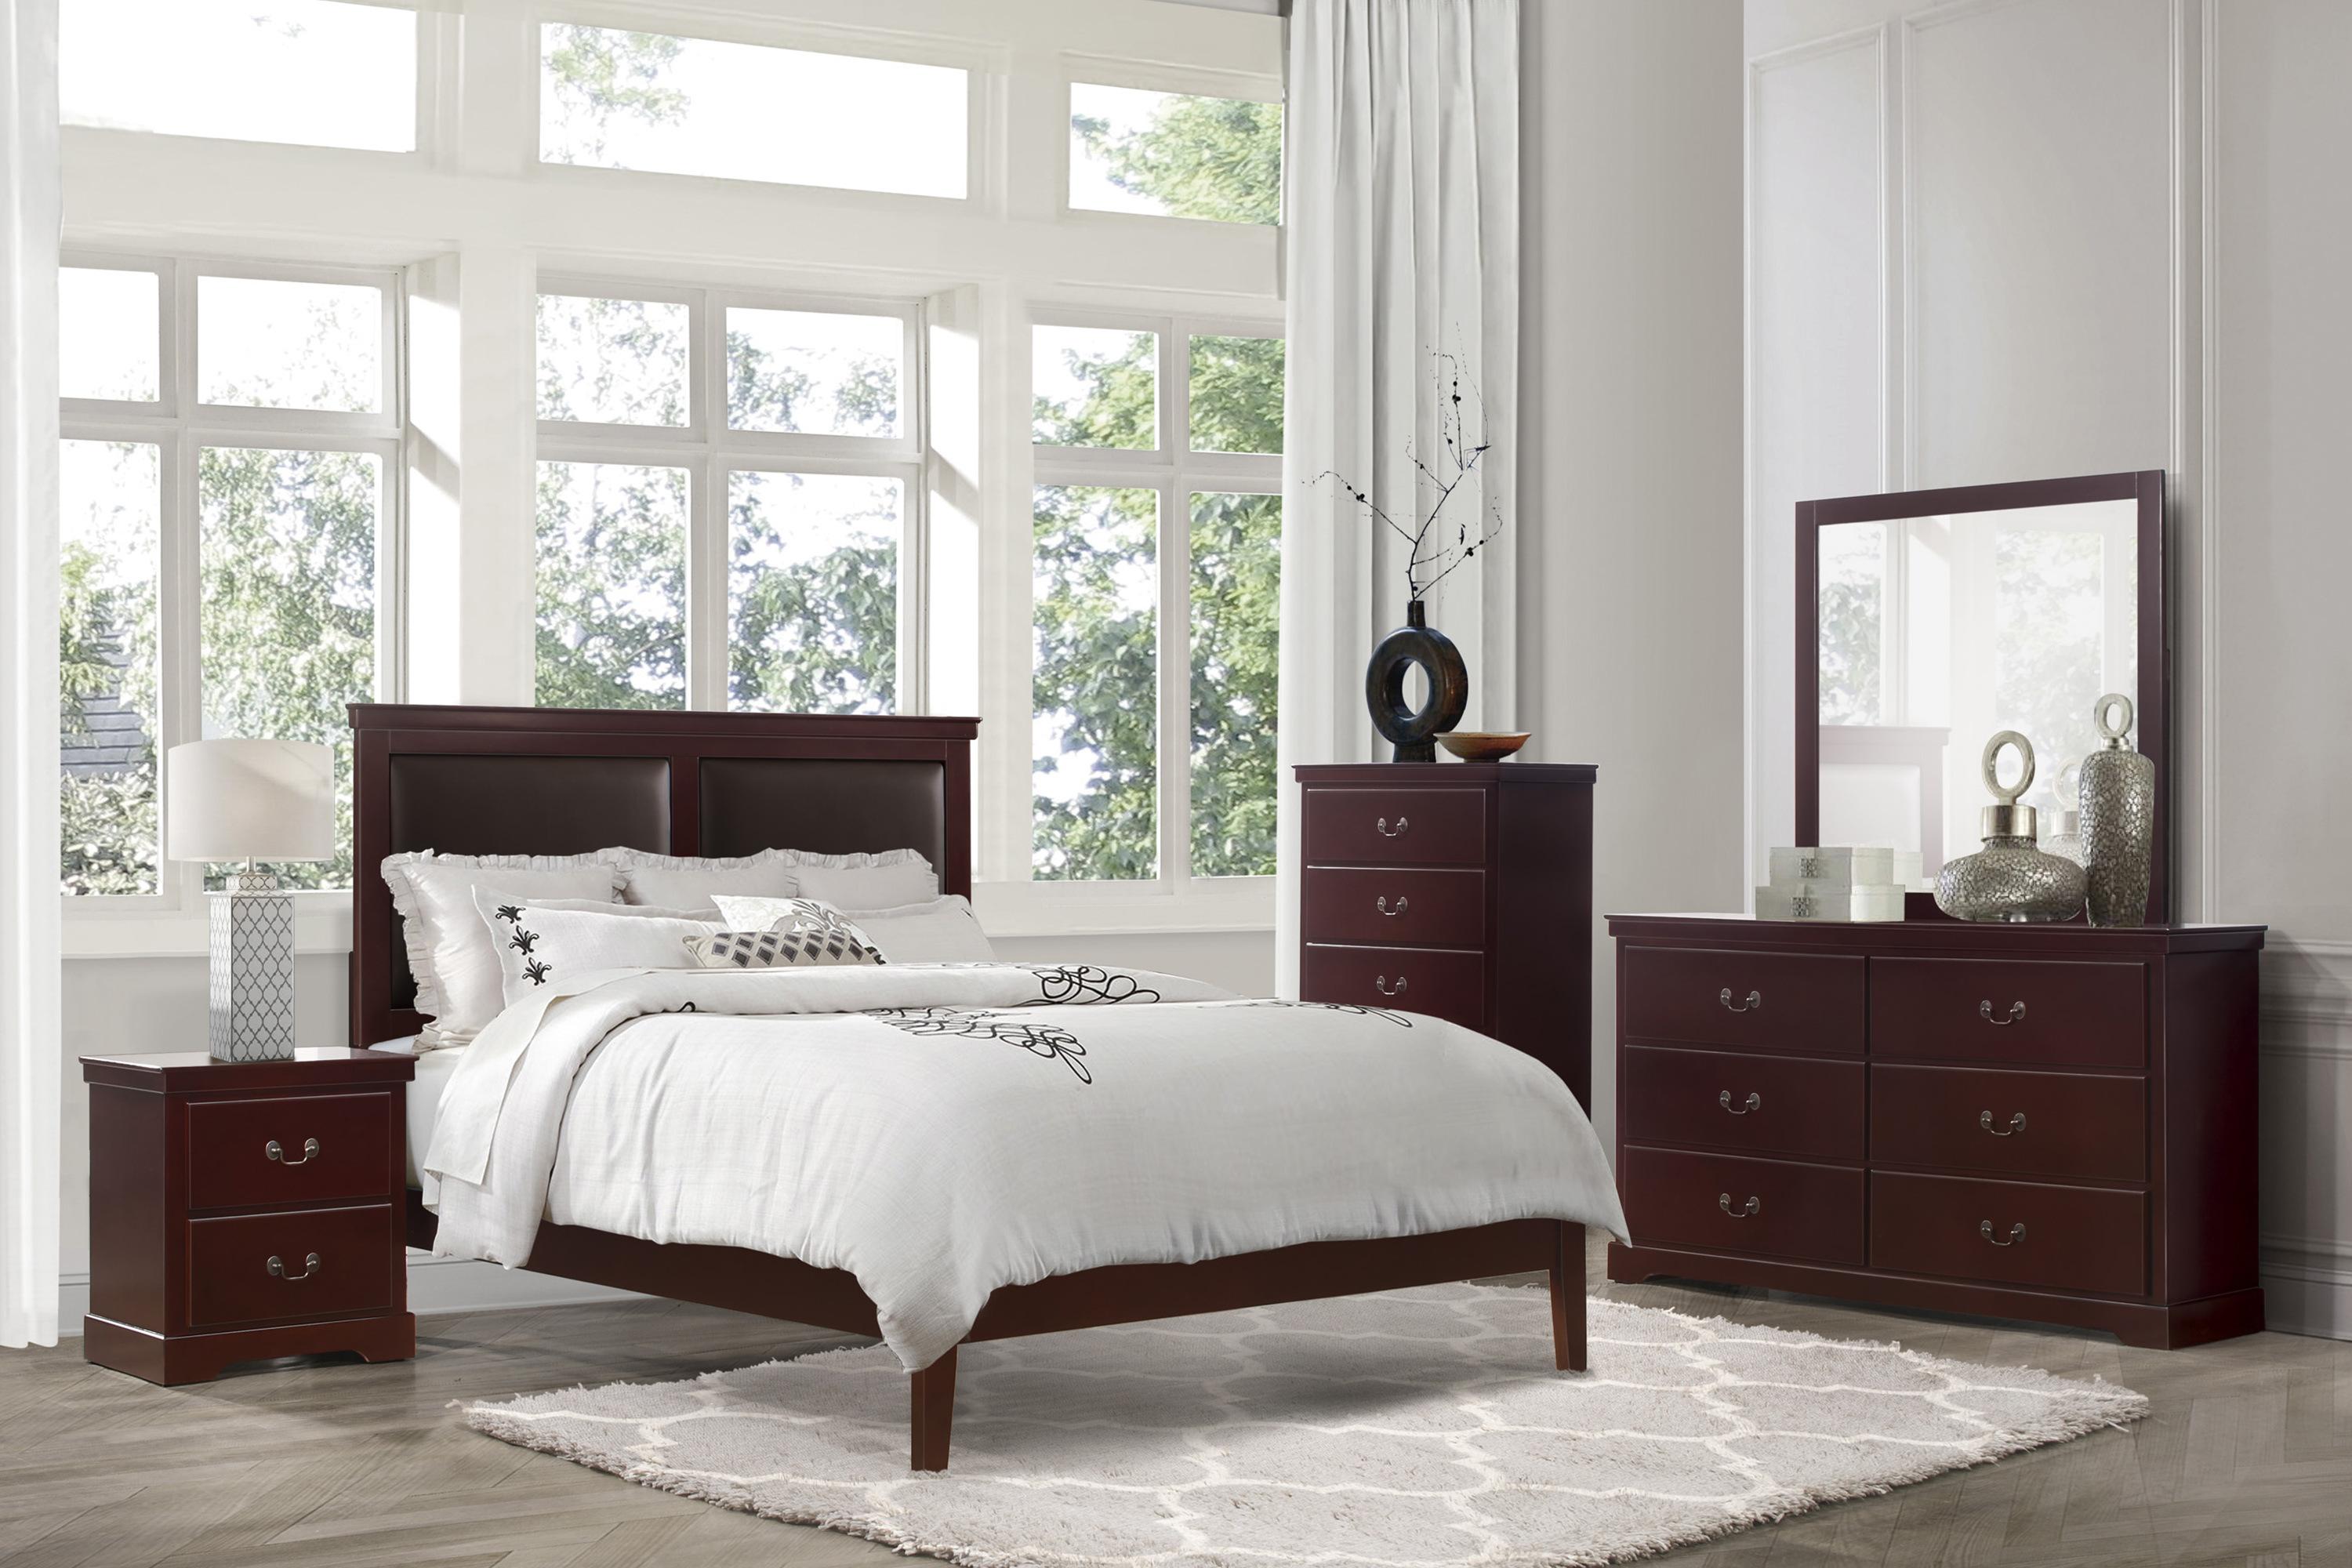 

    
Modern Cherry Wood King Bedroom Set 5pcs Homelegance 1519CHK-1EK* Seabright
